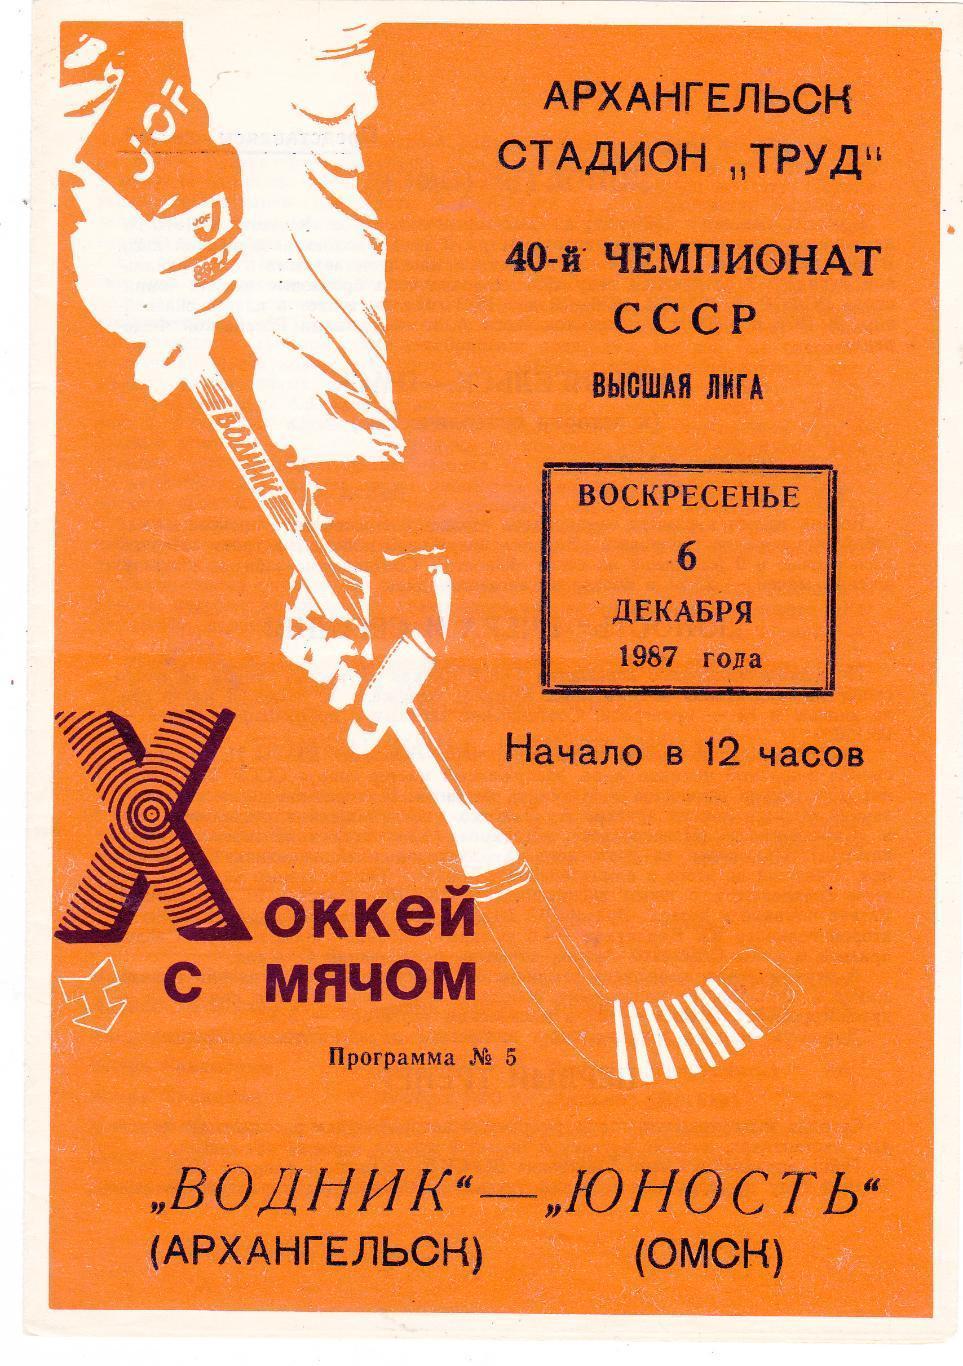 Водник Архангельск - Юность Омск - 06.12.1987 хоккей с мячом